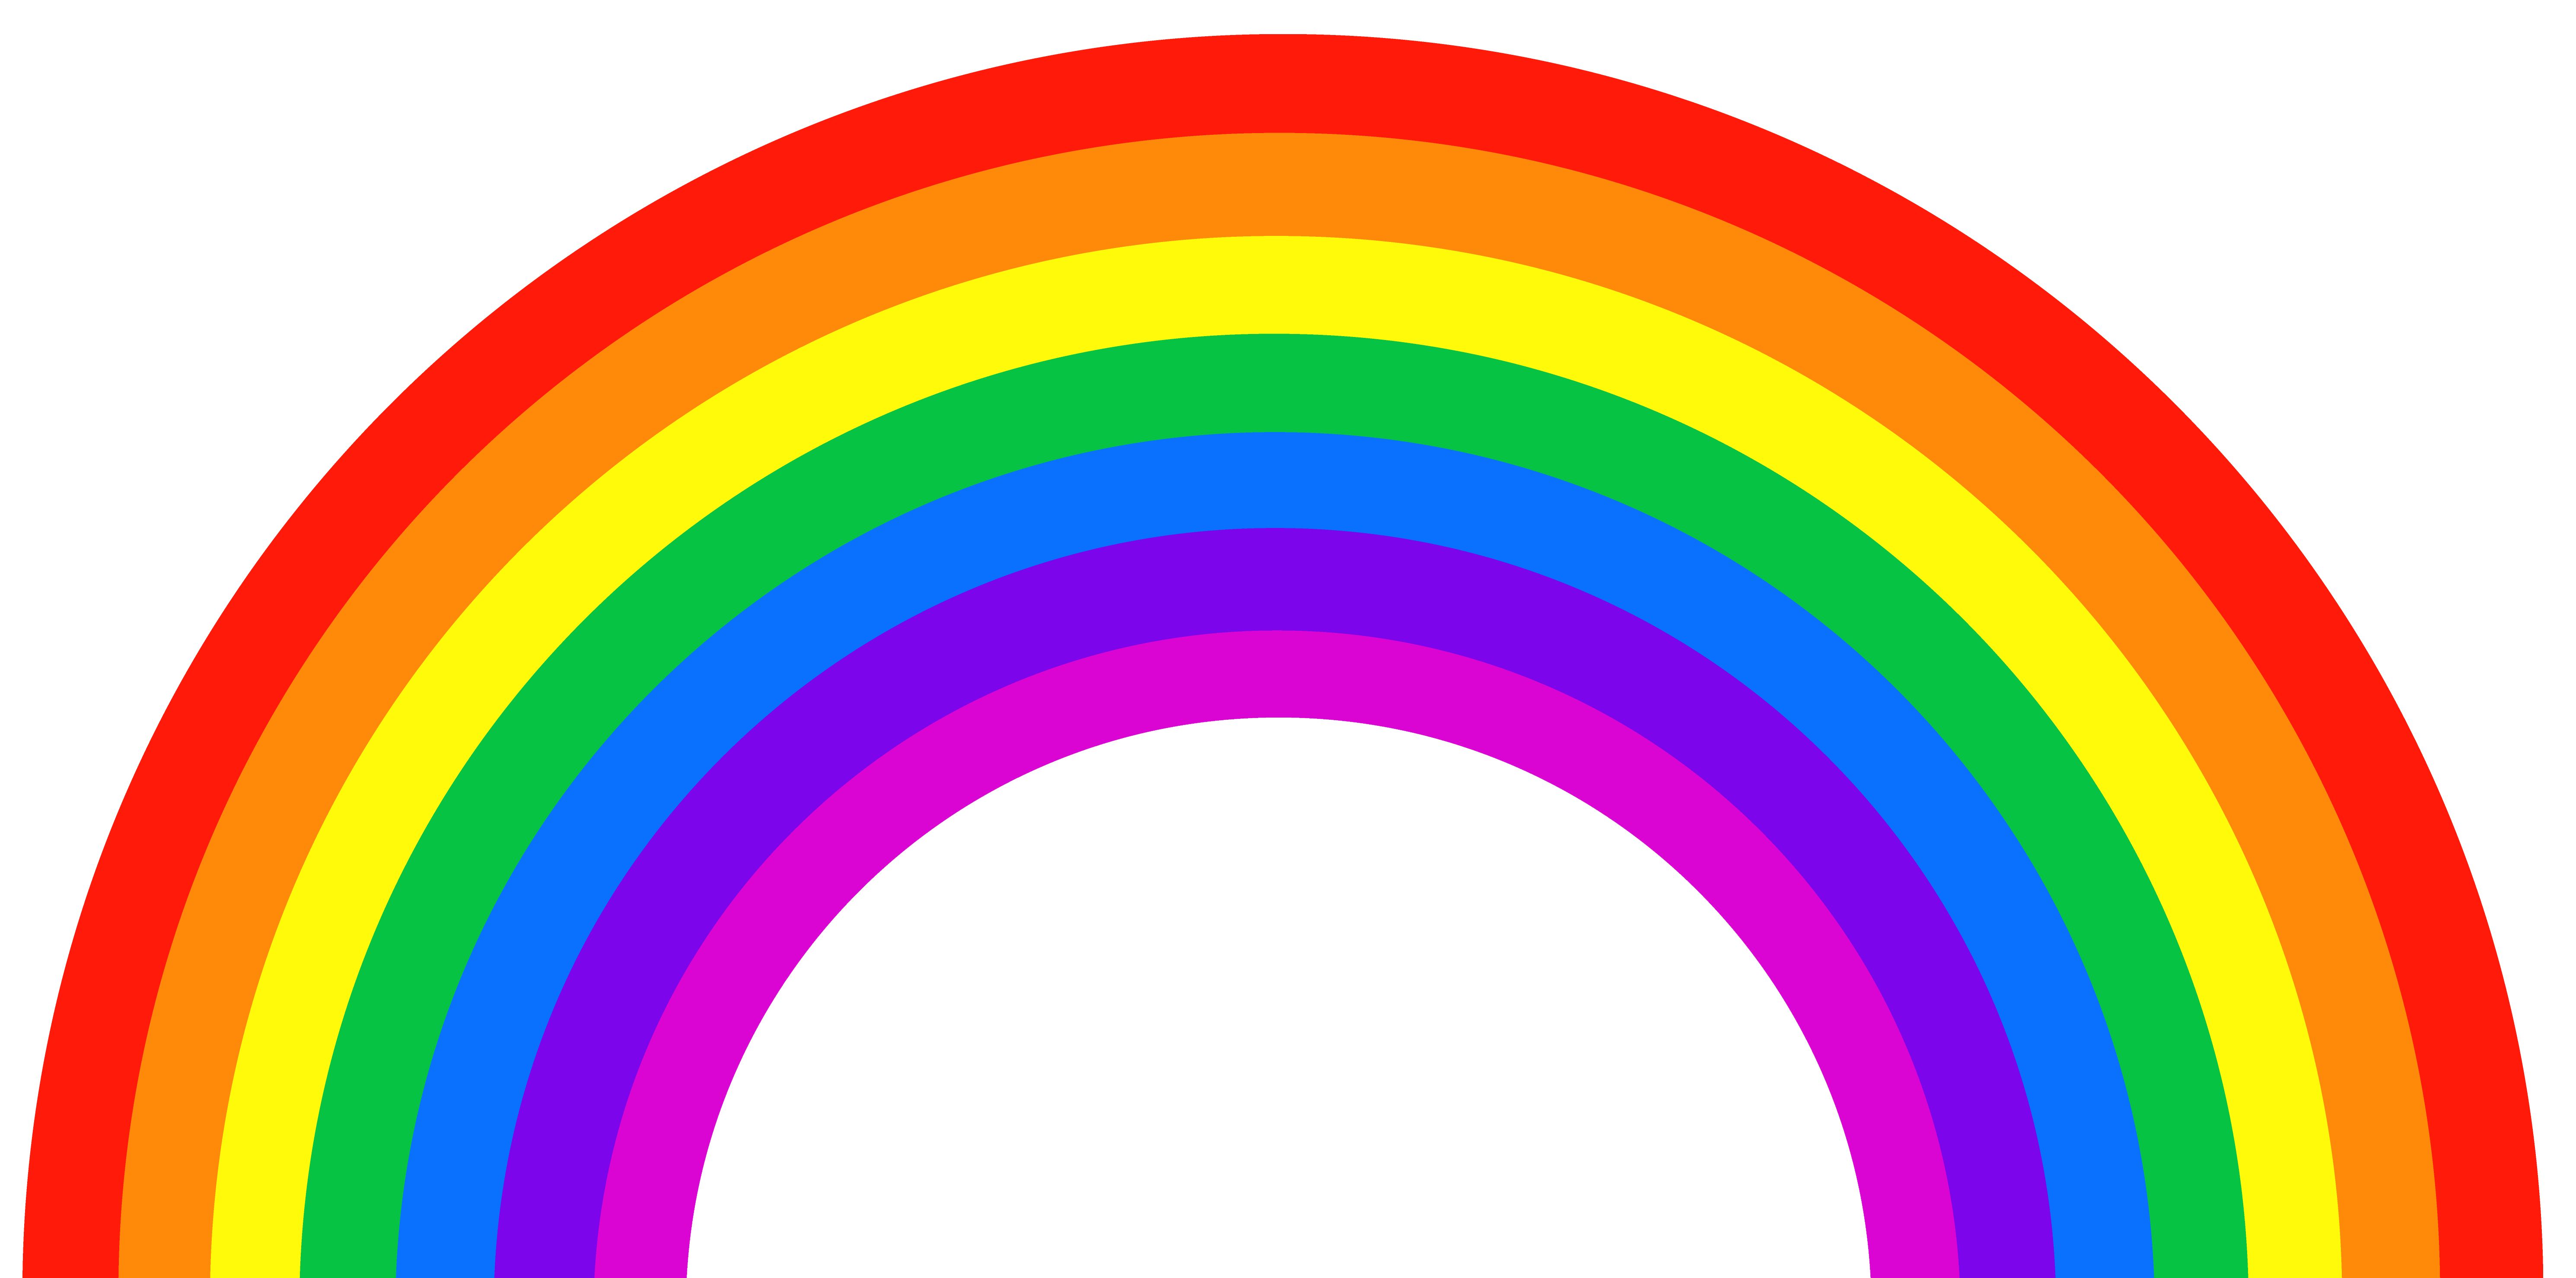 slime clipart rainbow